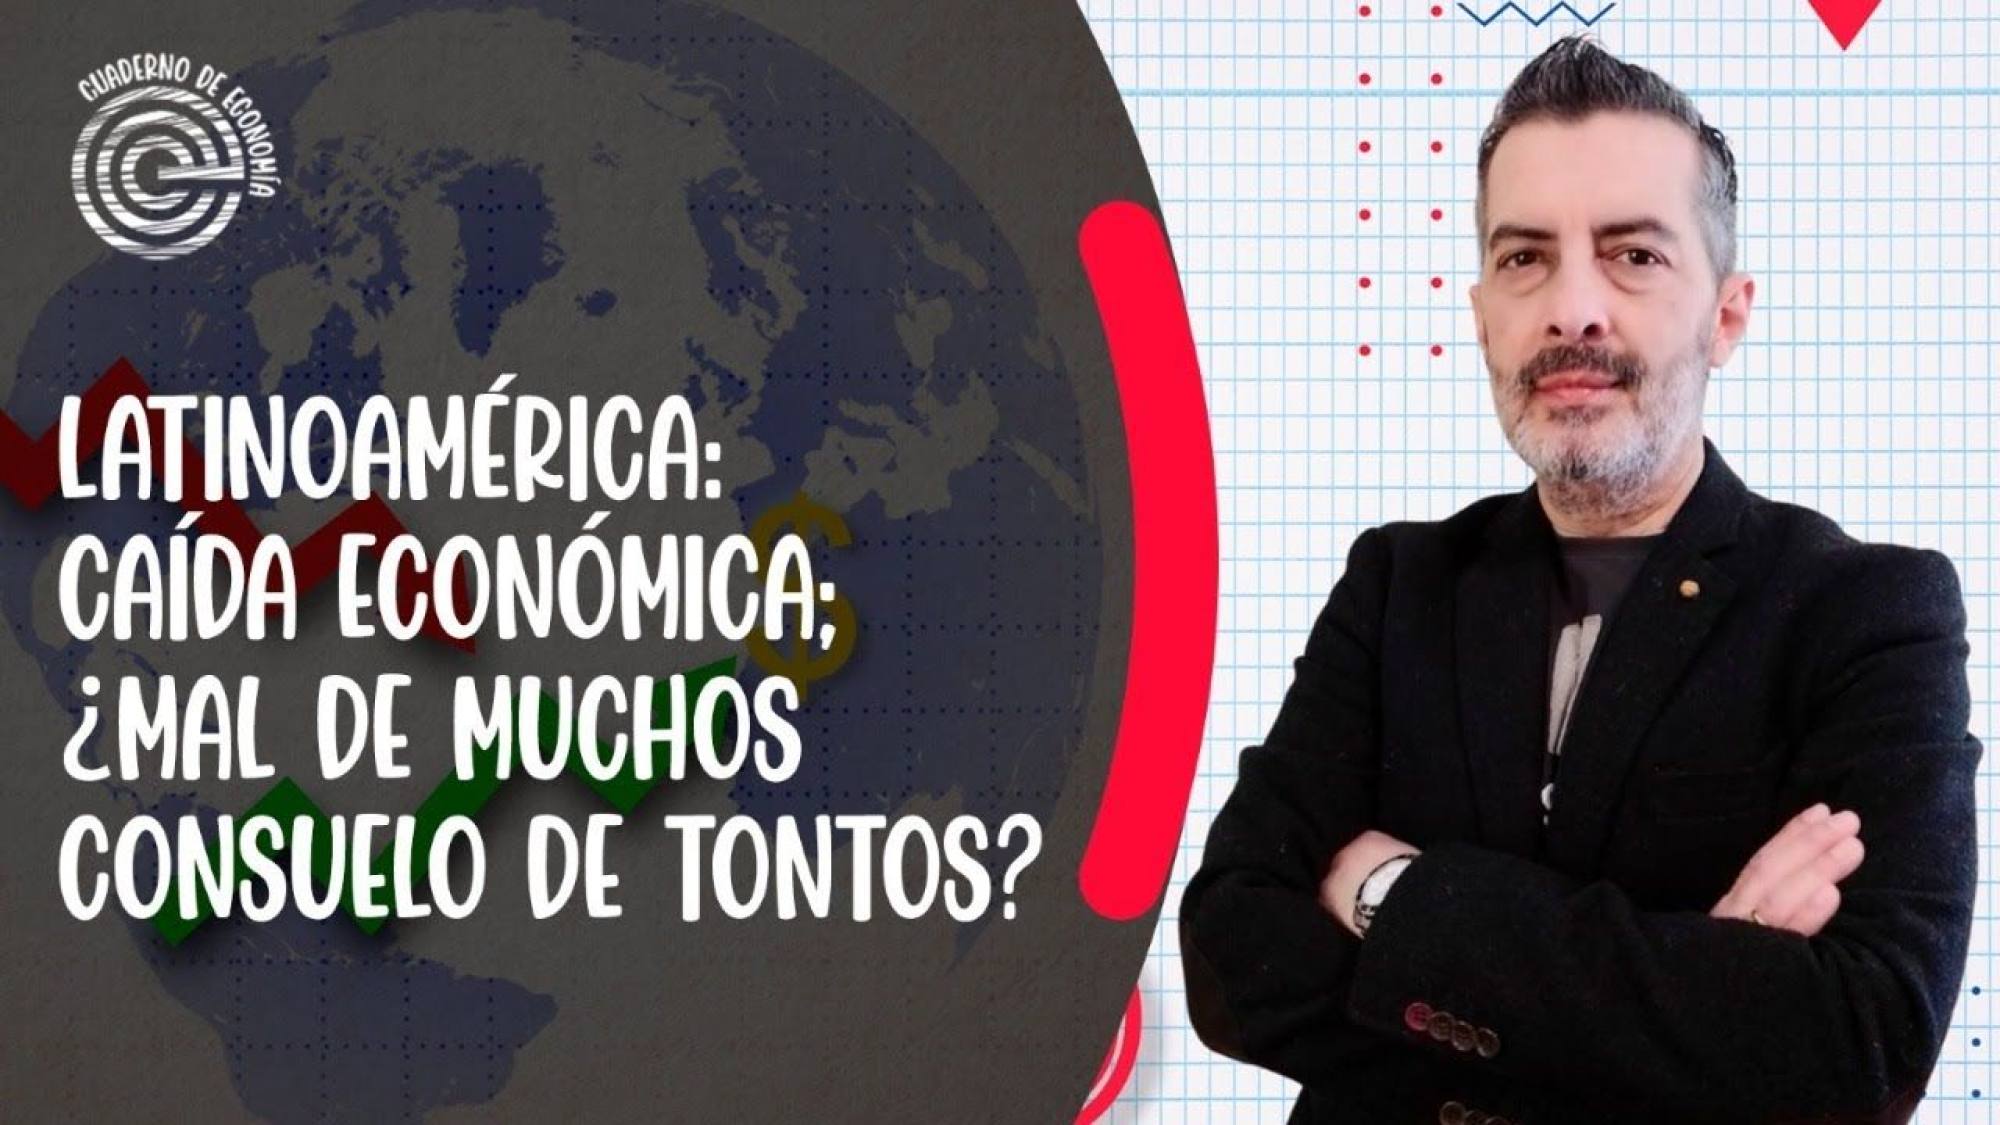 Latinoamérica: caída económica; ¿mal de muchos consuelo de tontos?, Epicentro TV